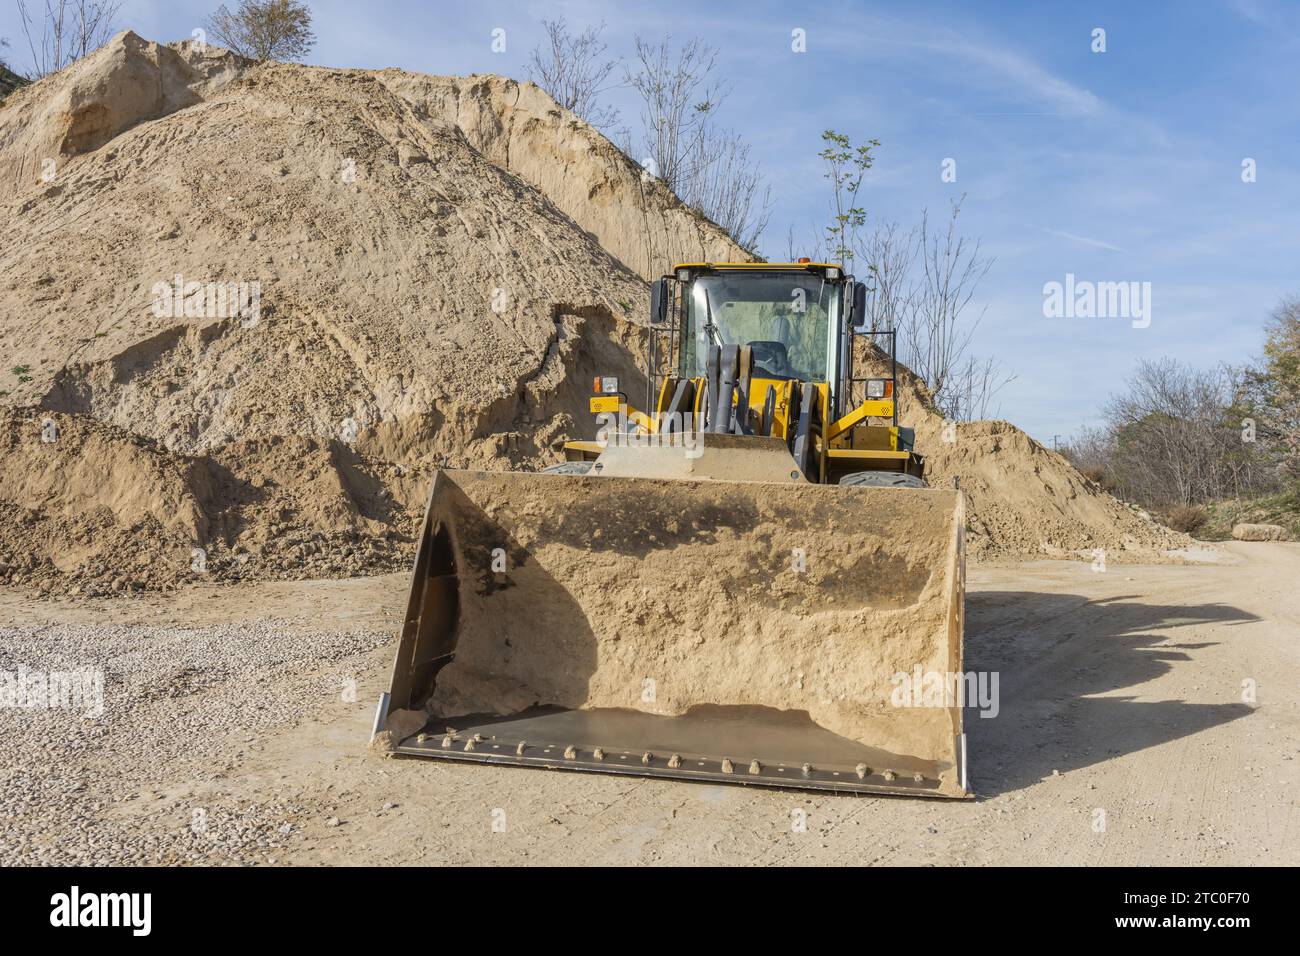 Une excavatrice s'est arrêtée dans une aire de travail avec une montagne de sable et de gravier sur le sol Banque D'Images